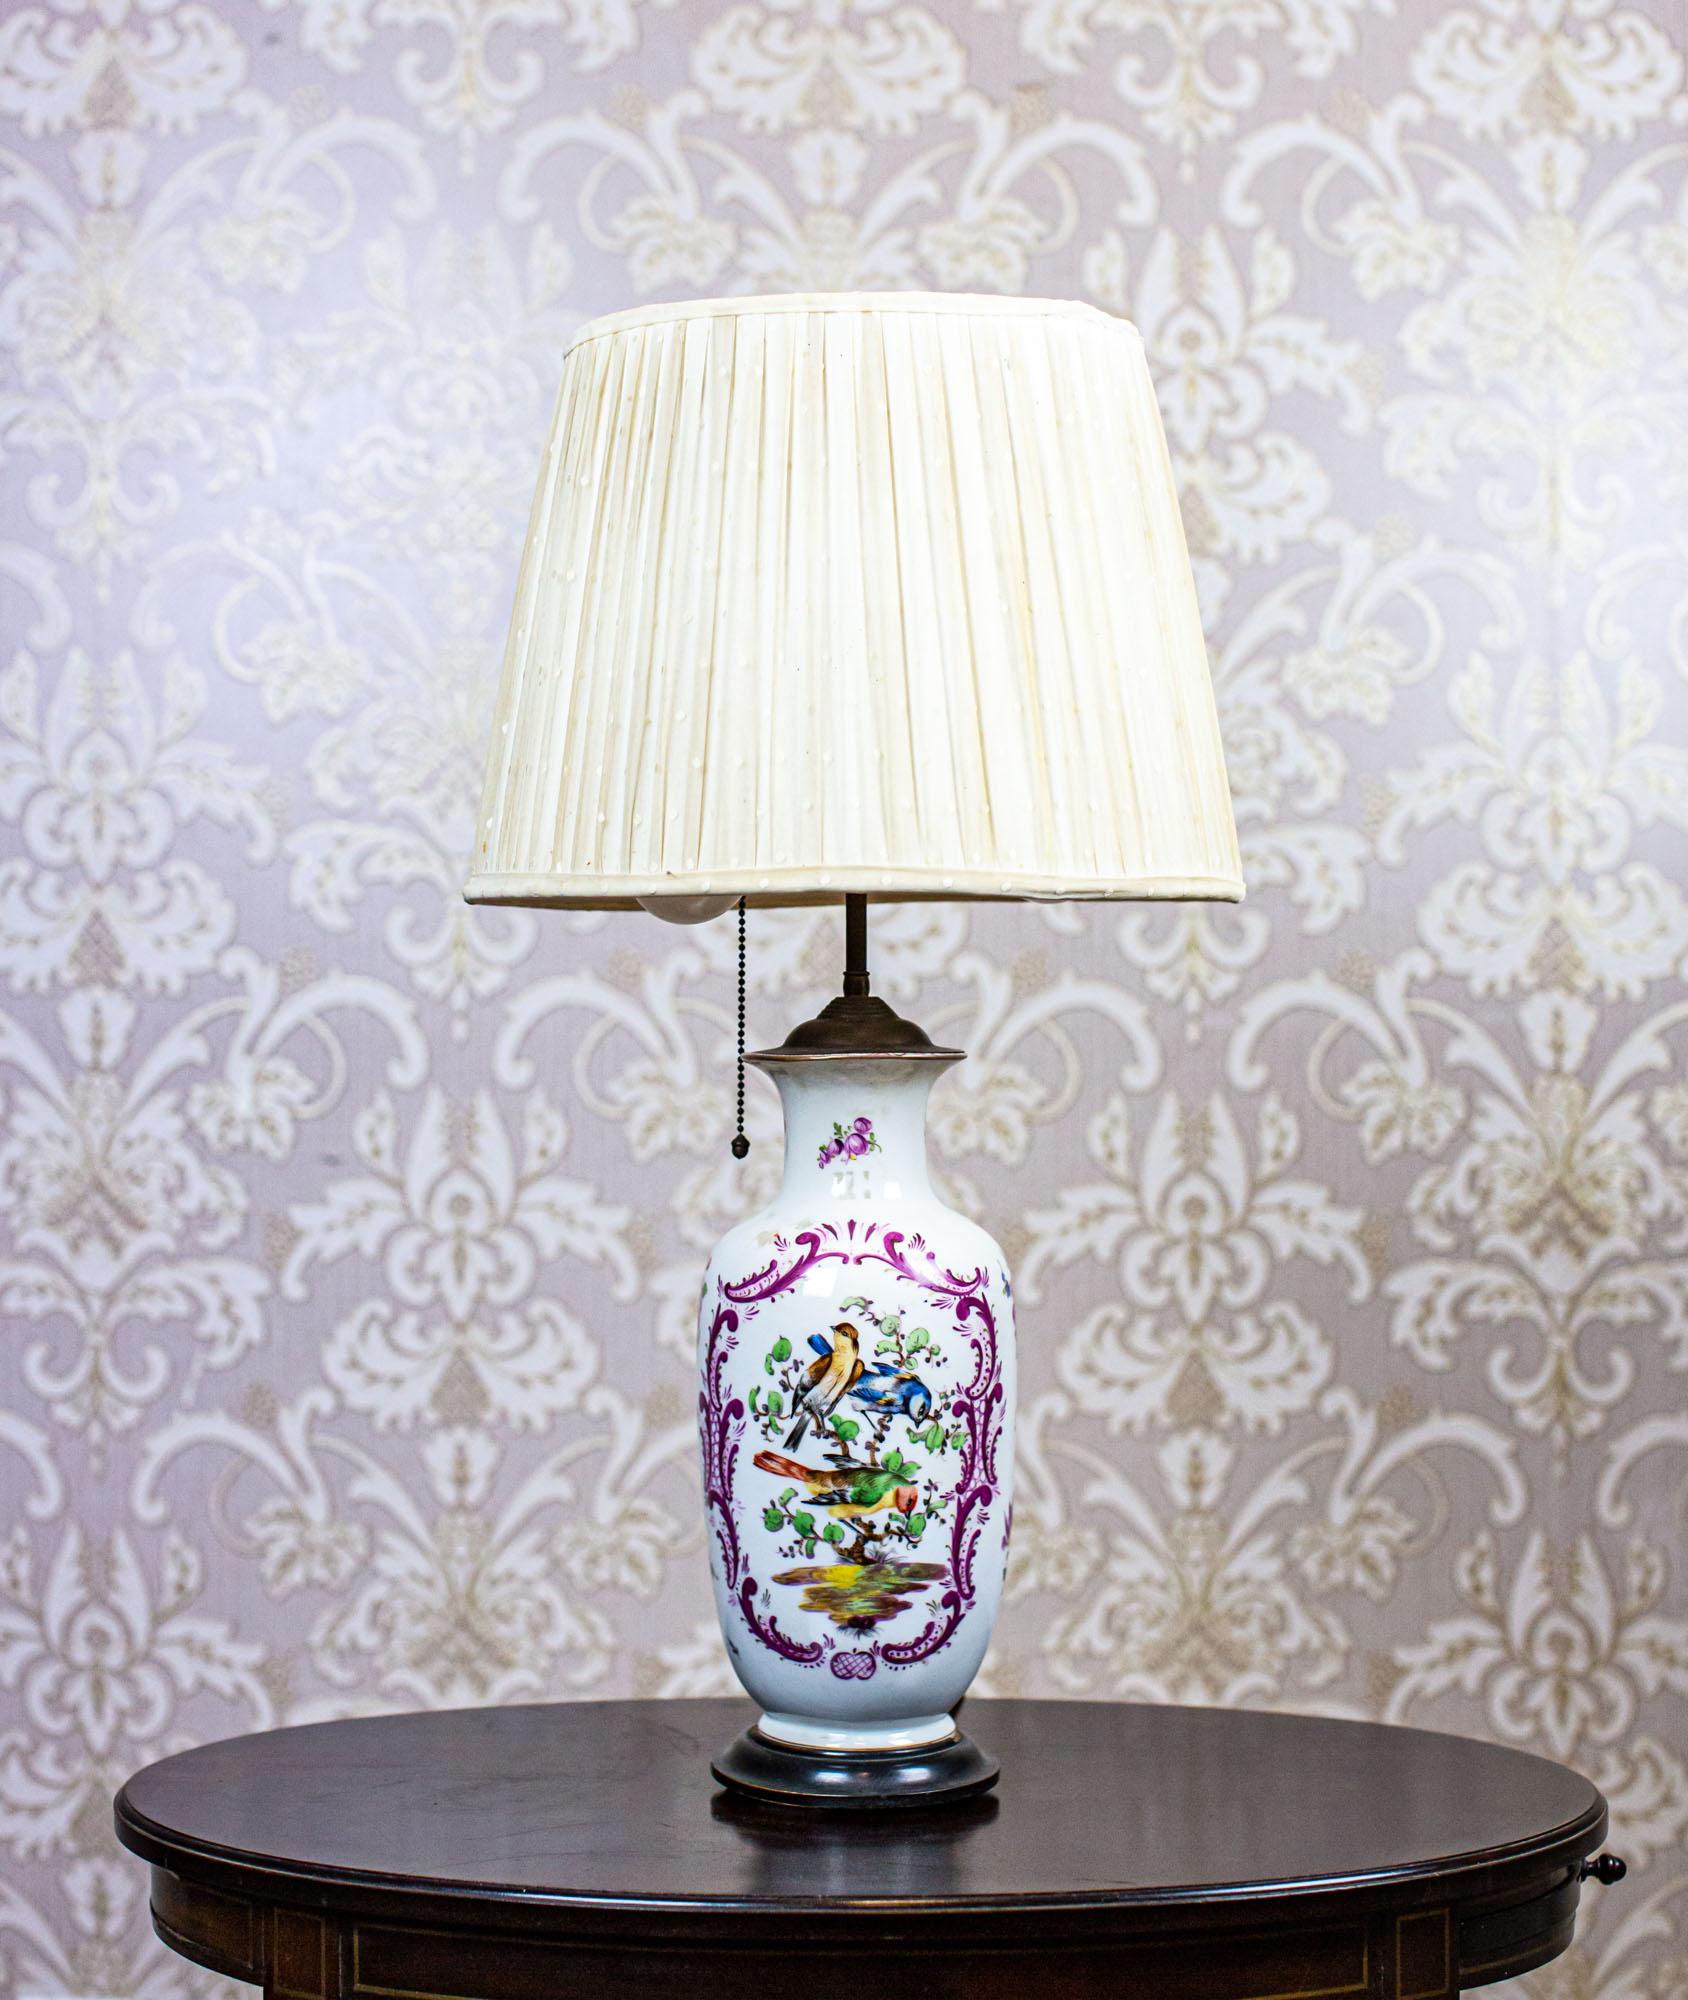 Elektrische Tischlampe aus dem 20. Jahrhundert mit dekorativem Keramiksockel

Wir präsentieren Ihnen eine elektrische Tischlampe aus der Mitte des. 20. Jahrhunderts.
Der Keramiksockel ist mit Mustern verziert, die die Natur darstellen. Der Schirm